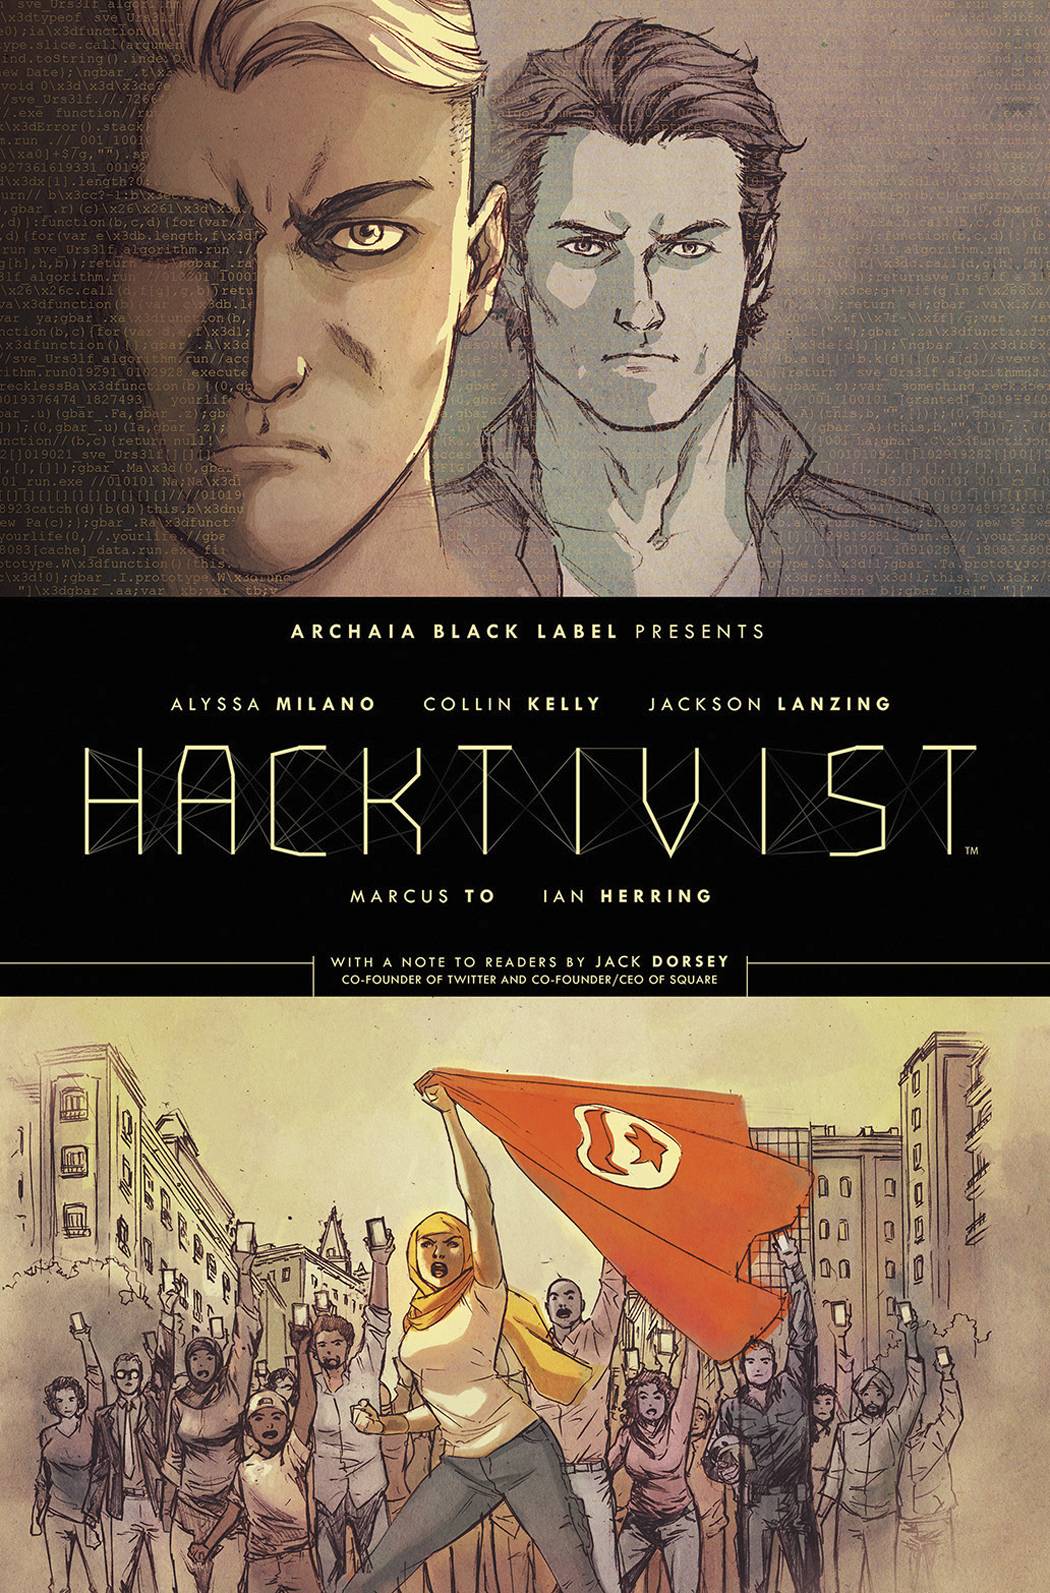 Hacktivist Hardcover Volume 1